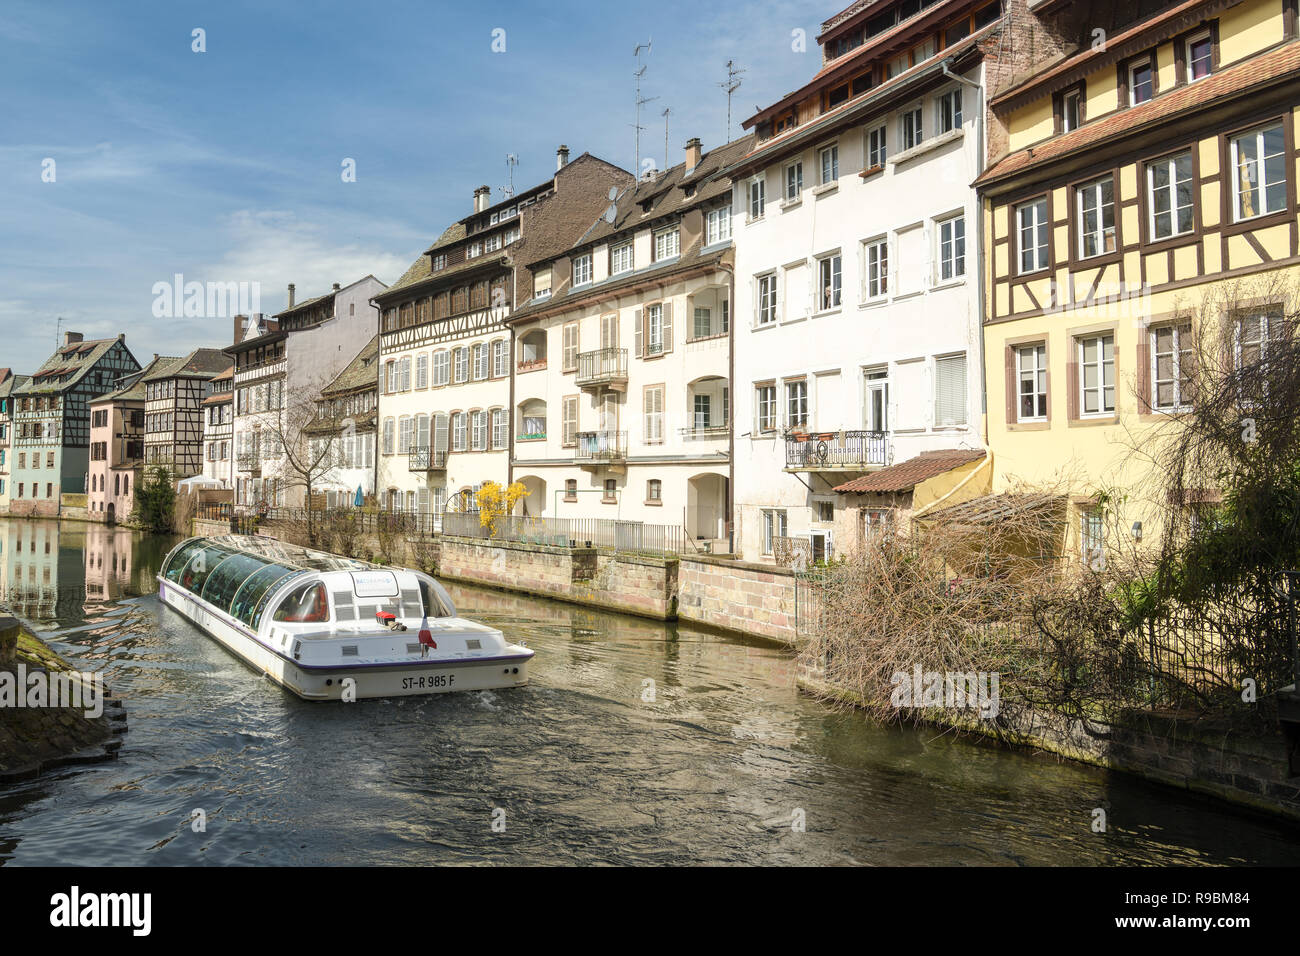 Strasburgo, Francia - 03 Aprile 2018: nave da crociera piena di turisti nel pittoresco piccolo Francia distretto a Strasburgo, in Francia durante la primavera 2018 Foto Stock